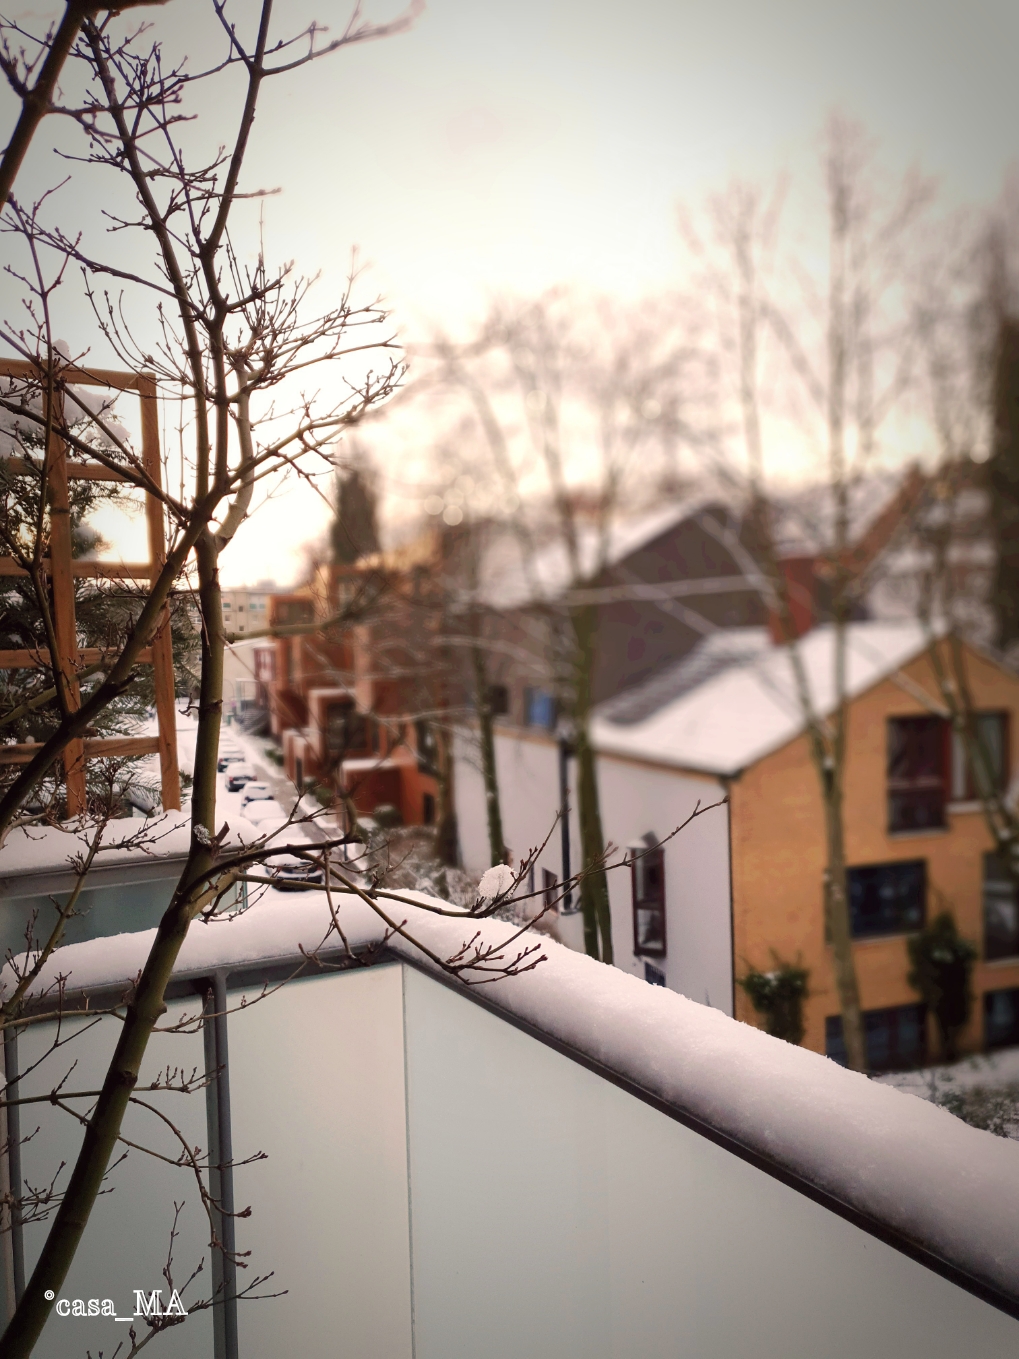 #gutenmorgen Schnee!
Der Blick vom Balkon. 